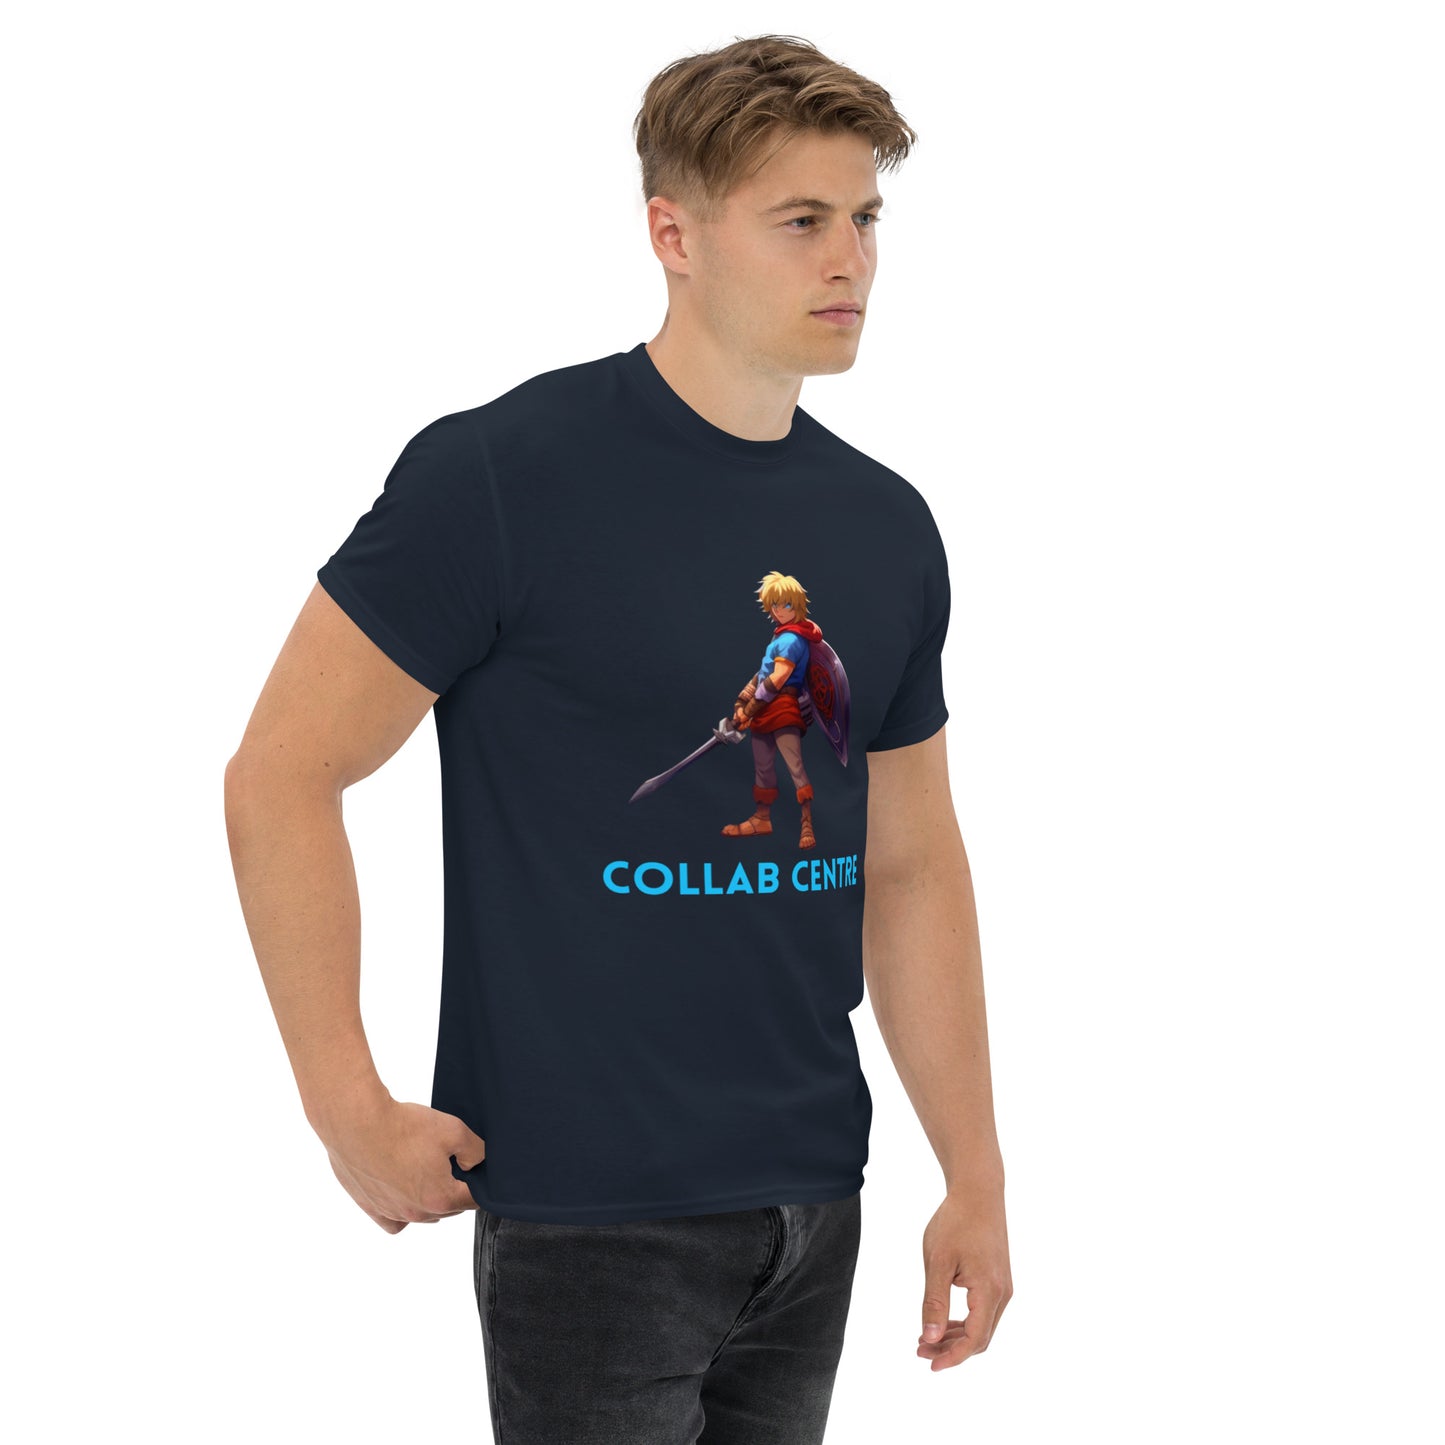 Collab Center Warrior Text Camiseta clásica para hombre